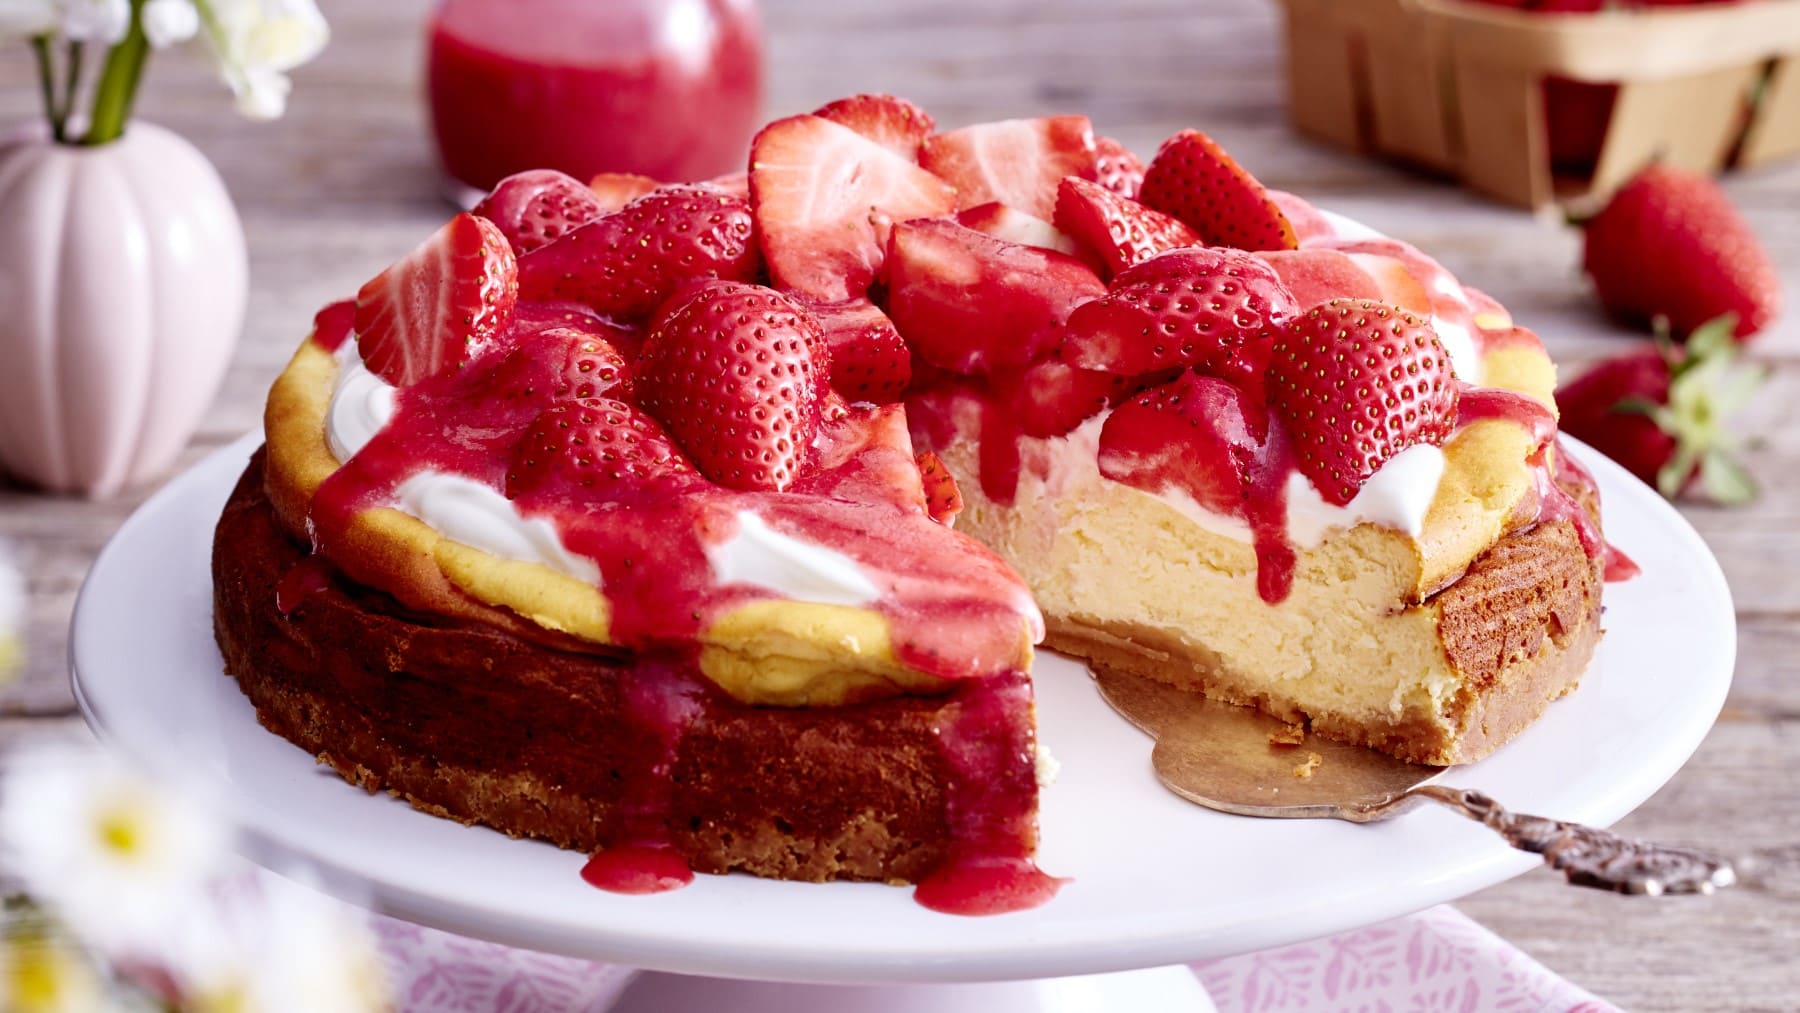 Ein Cheesecake mit Erdbeeren und ein Tortenheber auf einem weißen Teller. Links oben eine kleine Vase mit Blumen, rechts oben eine Packung Erdbeeren.